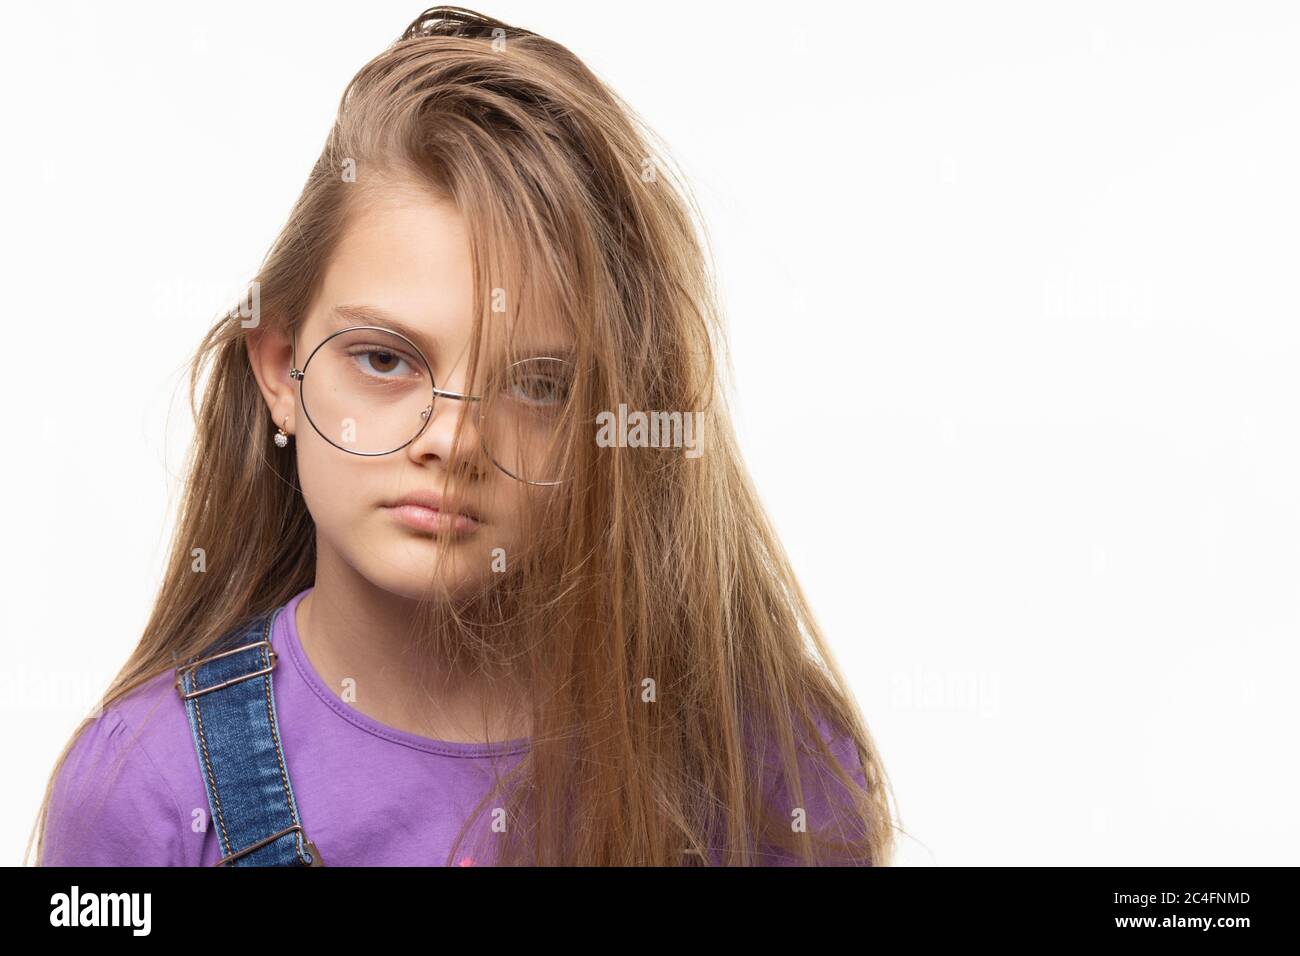 Ritratto di una ragazza di undici anni su sfondo bianco con una pettinatura originale Foto Stock